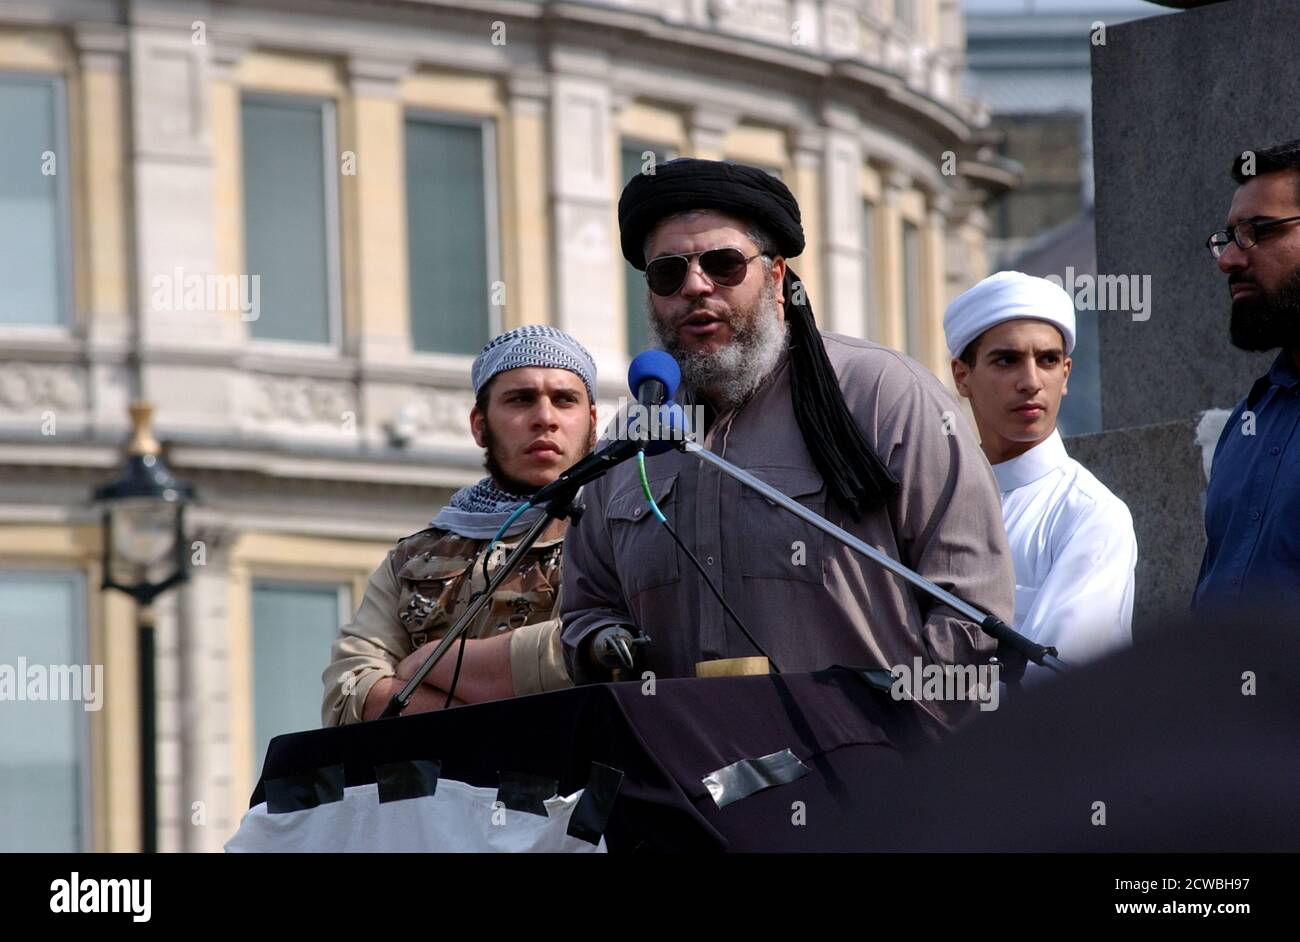 Foto von Abu Hamza. Mustafa Kamel Mustafa (1958-) ein ägyptischer Kleriker, der Imam der Finsbury Park Moschee in London, England war, wo er islamischen Fundamentalismus und militanten Islamismus predigte. Stockfoto